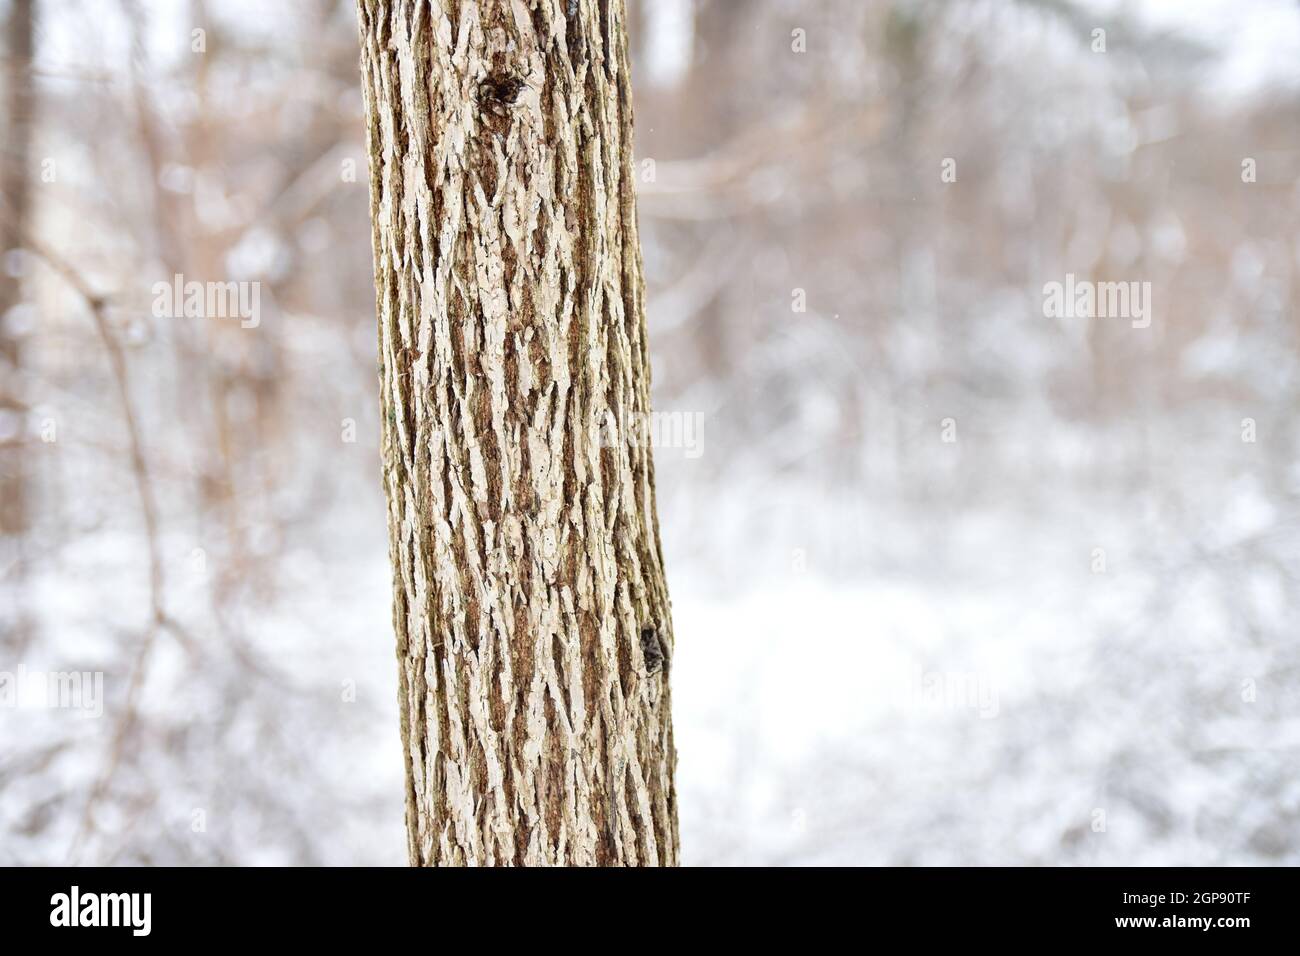 Un tronco de árbol con corteza profundamente acanalada se erige con un desenfoque de bosque nevado en el fondo. Espacio de copia. Foto de stock